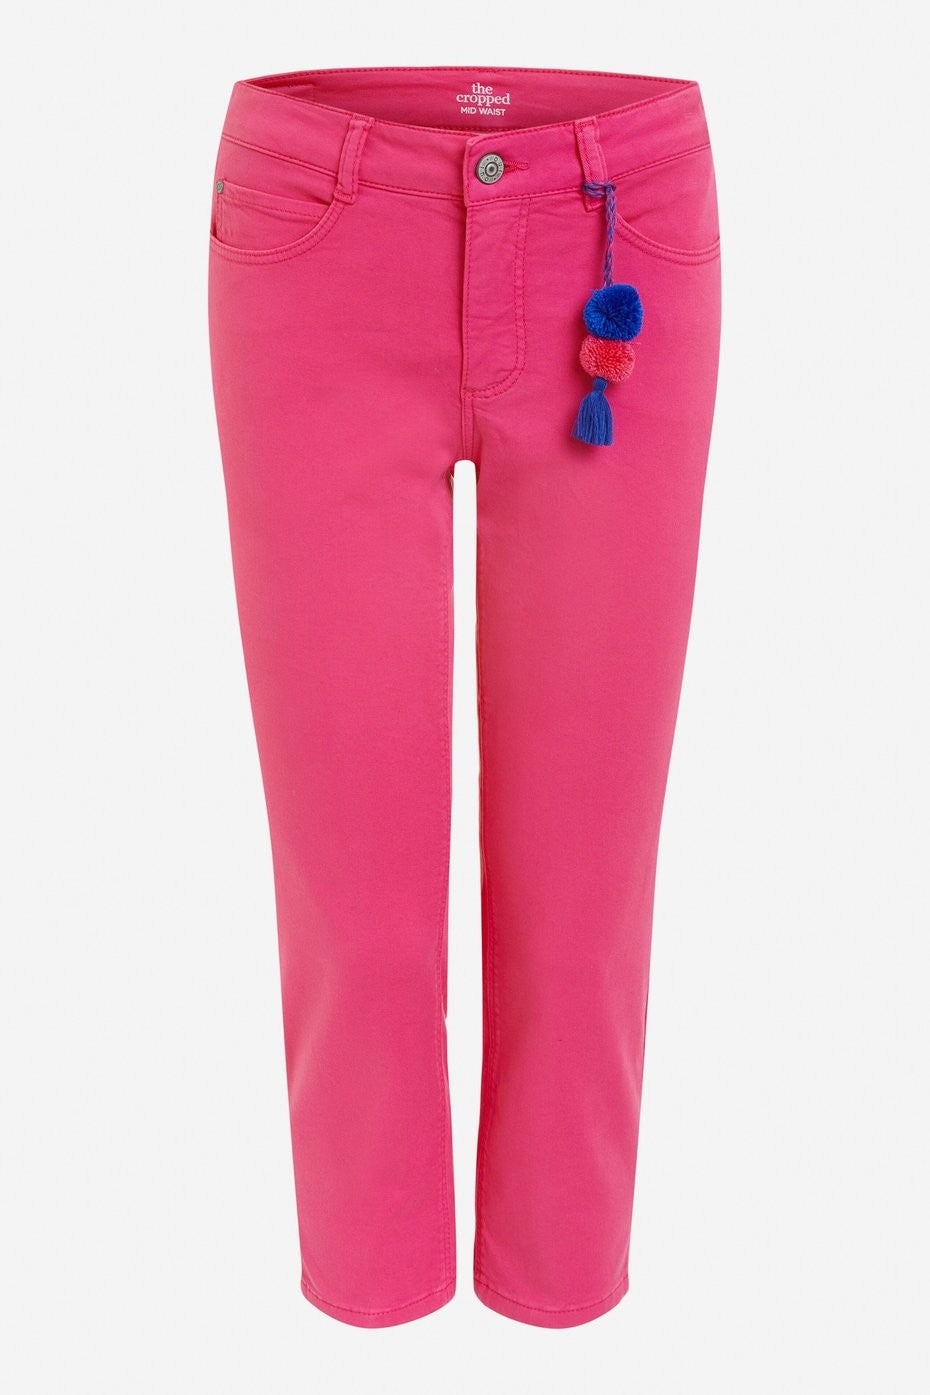 Oui Pink Capri Jeans